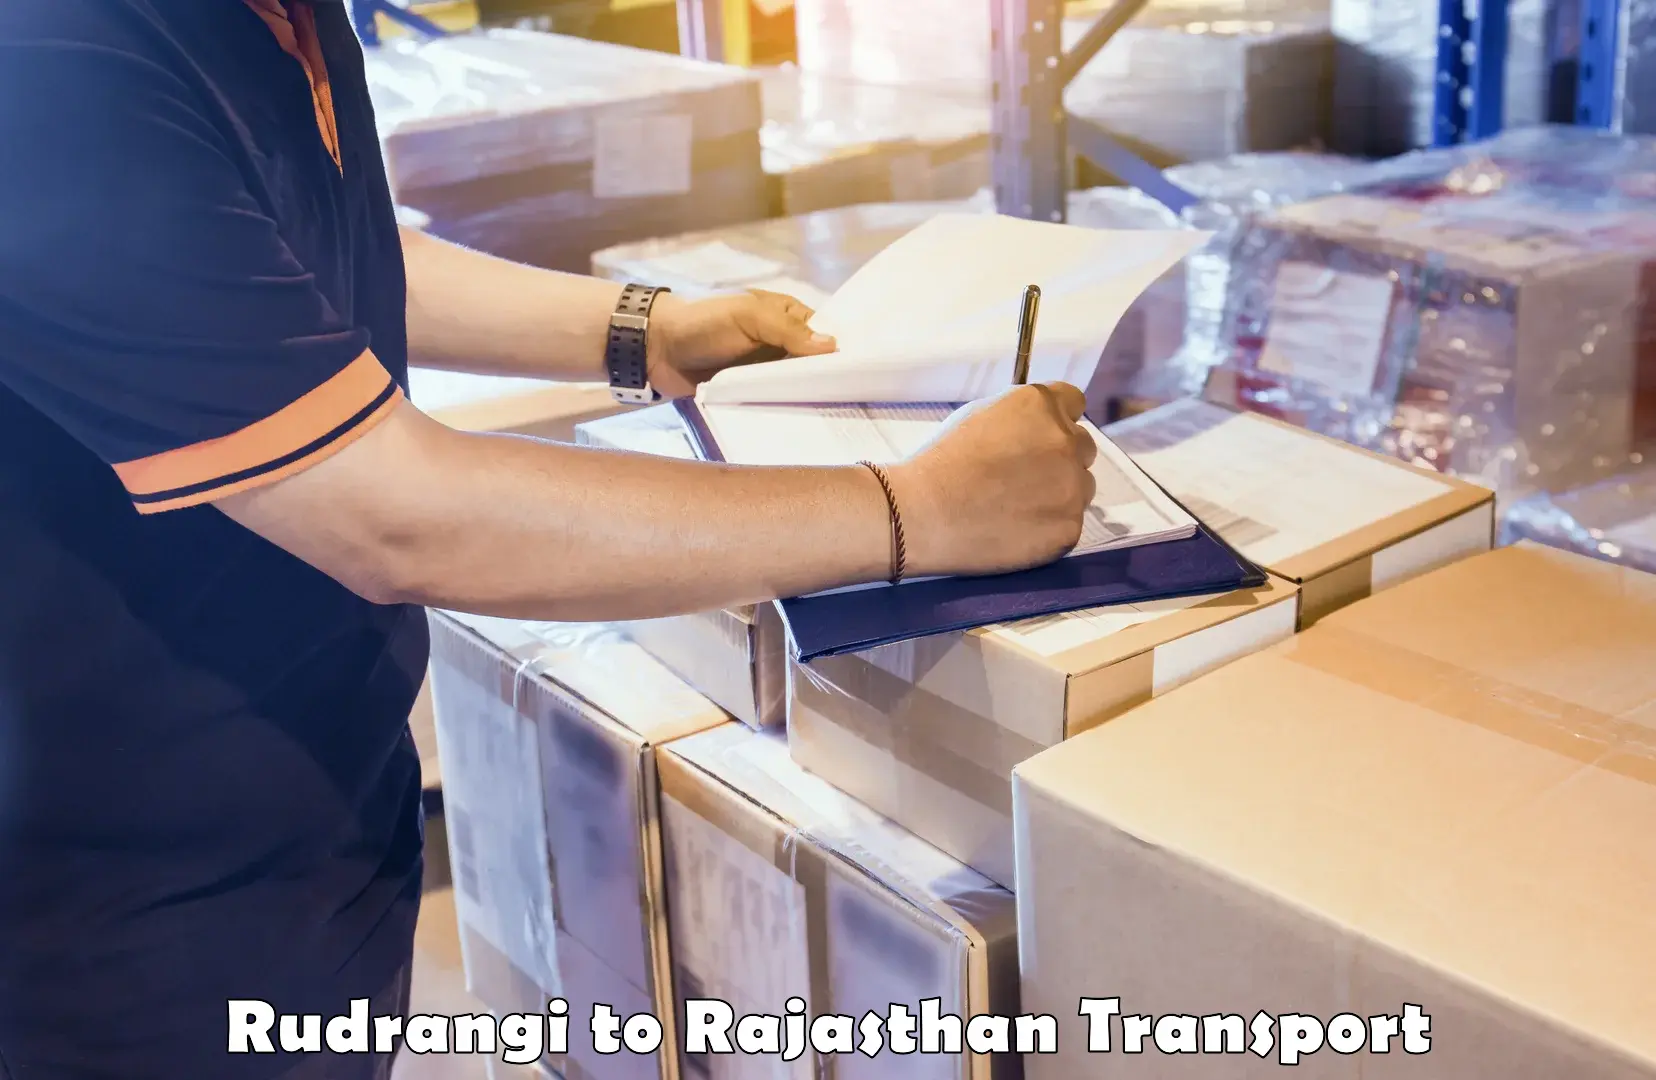 Furniture transport service Rudrangi to Shahpura Jaipur